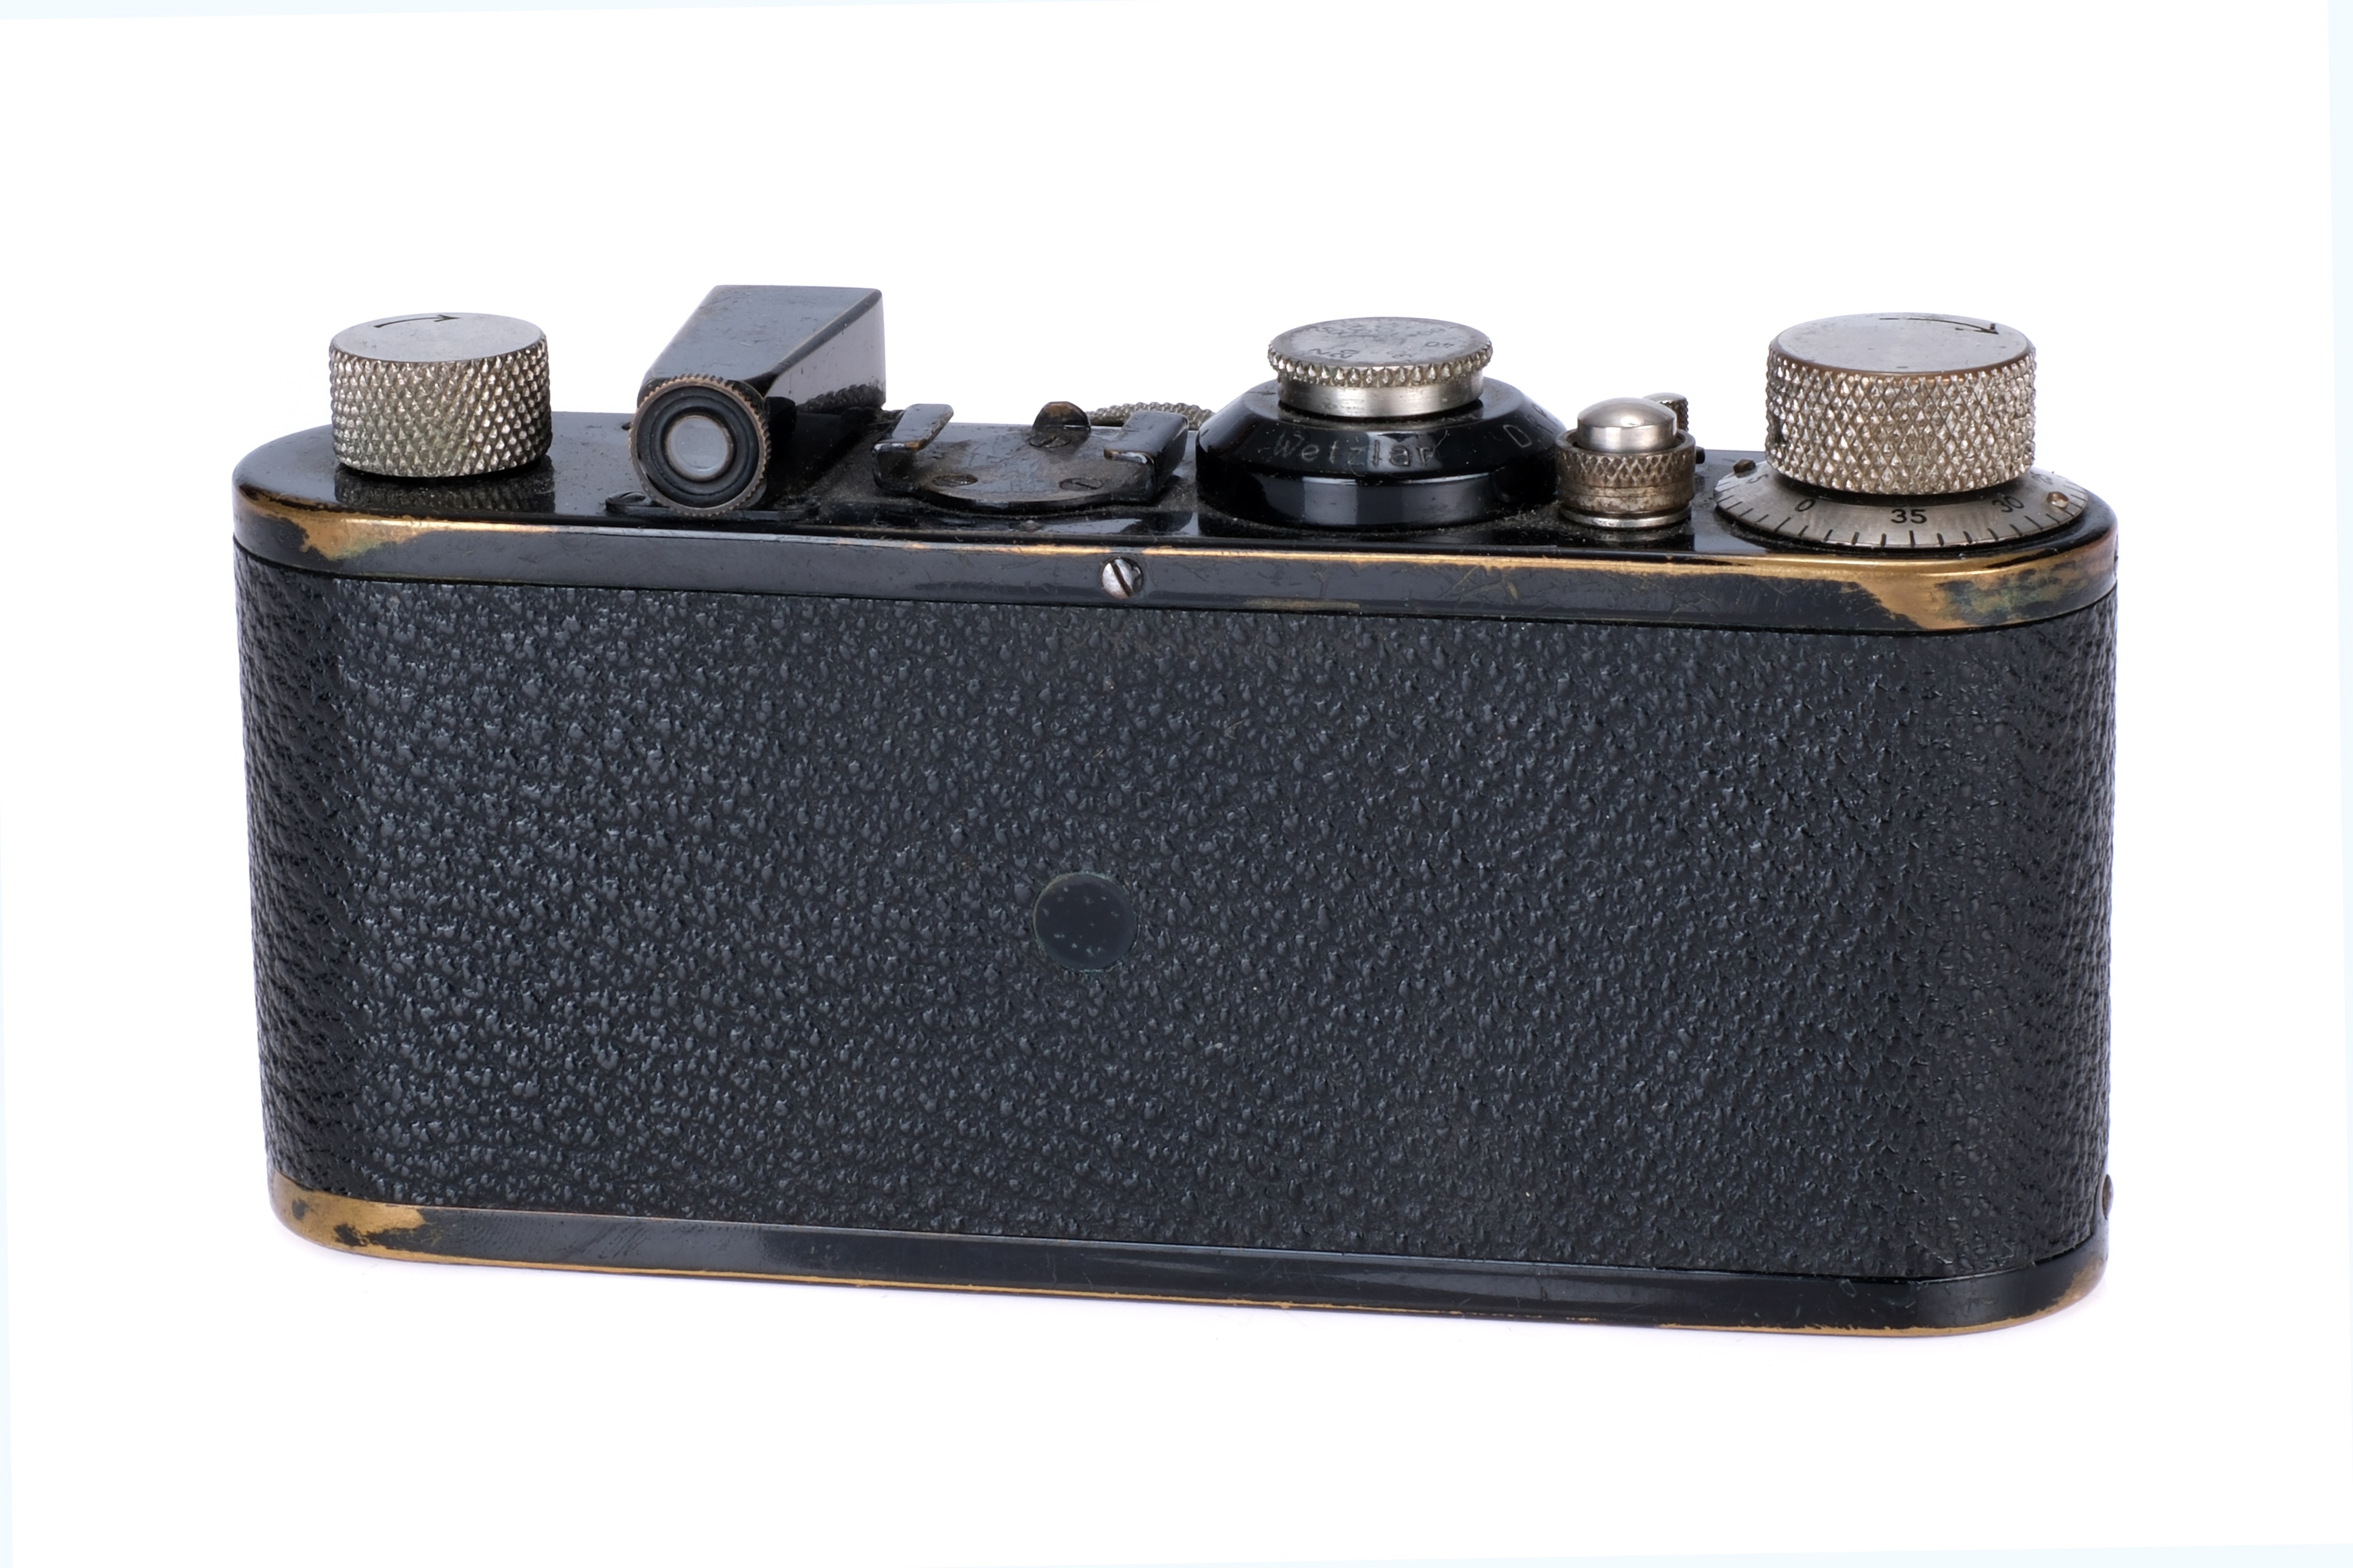 A Leica Ia Close Focus Camera, - Image 4 of 4